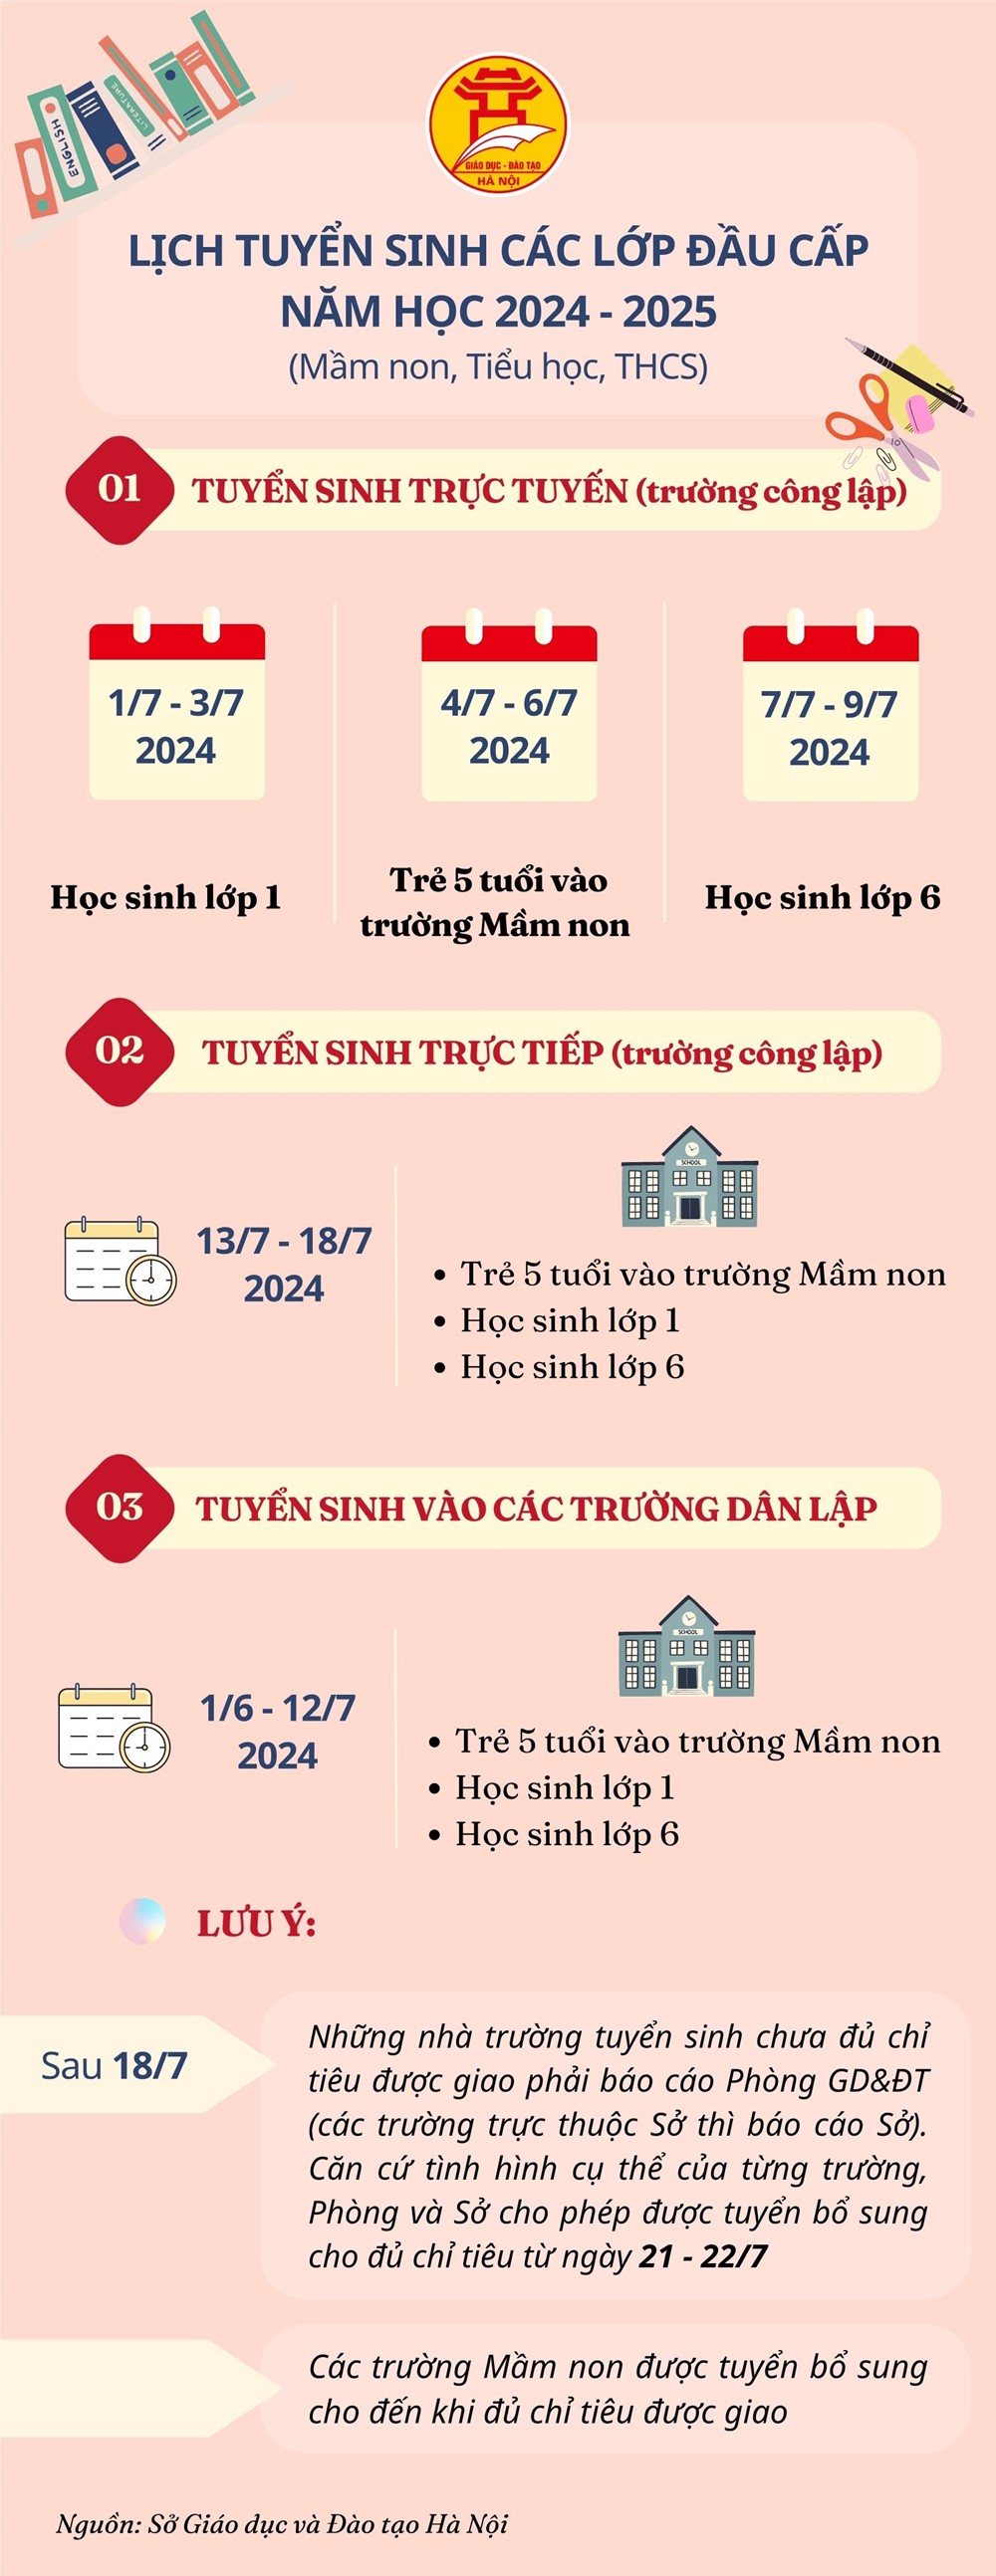 [Infographic] Hà Nội: Lịch tuyển sinh các lớp đầu cấp năm học 2024-2025 - ảnh 1